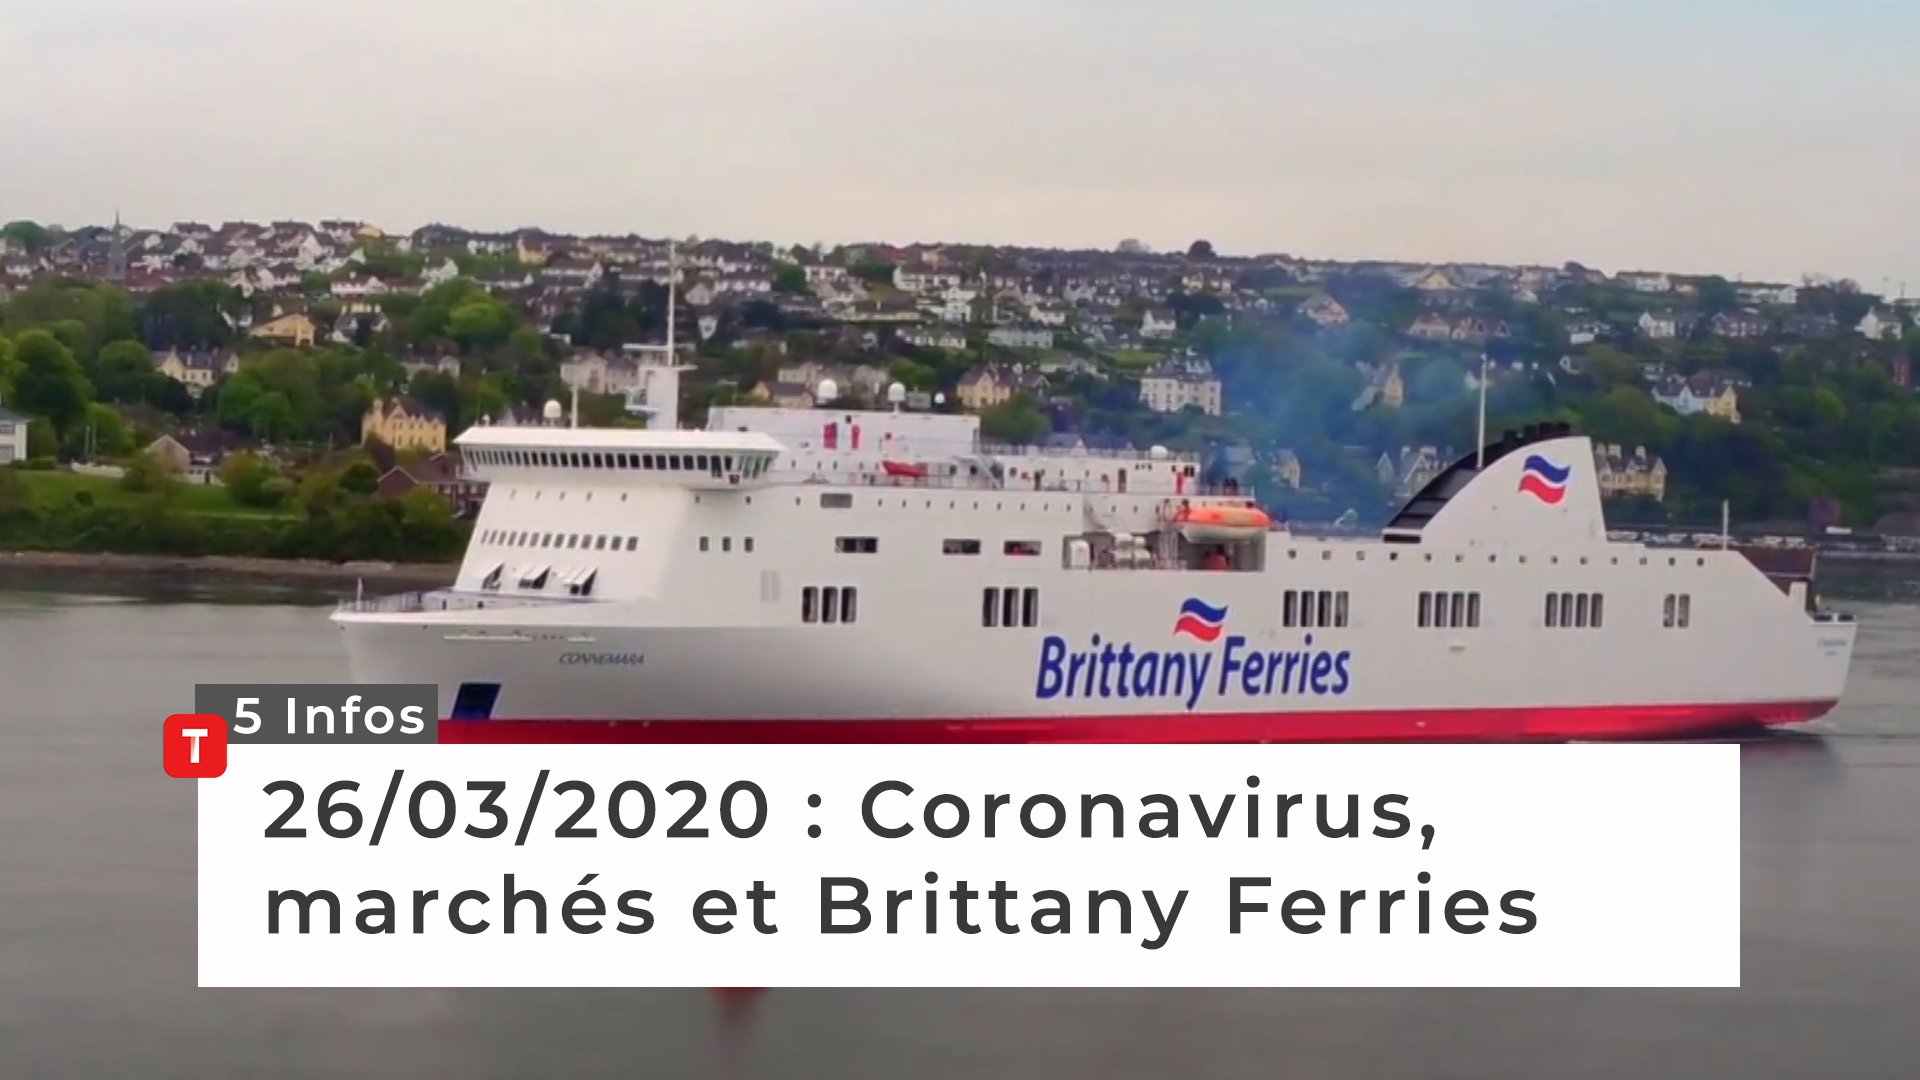 Coronavirus, marchés et Brittany Ferries … Cinq infos bretonnes du 26 mars (Le Télégramme)